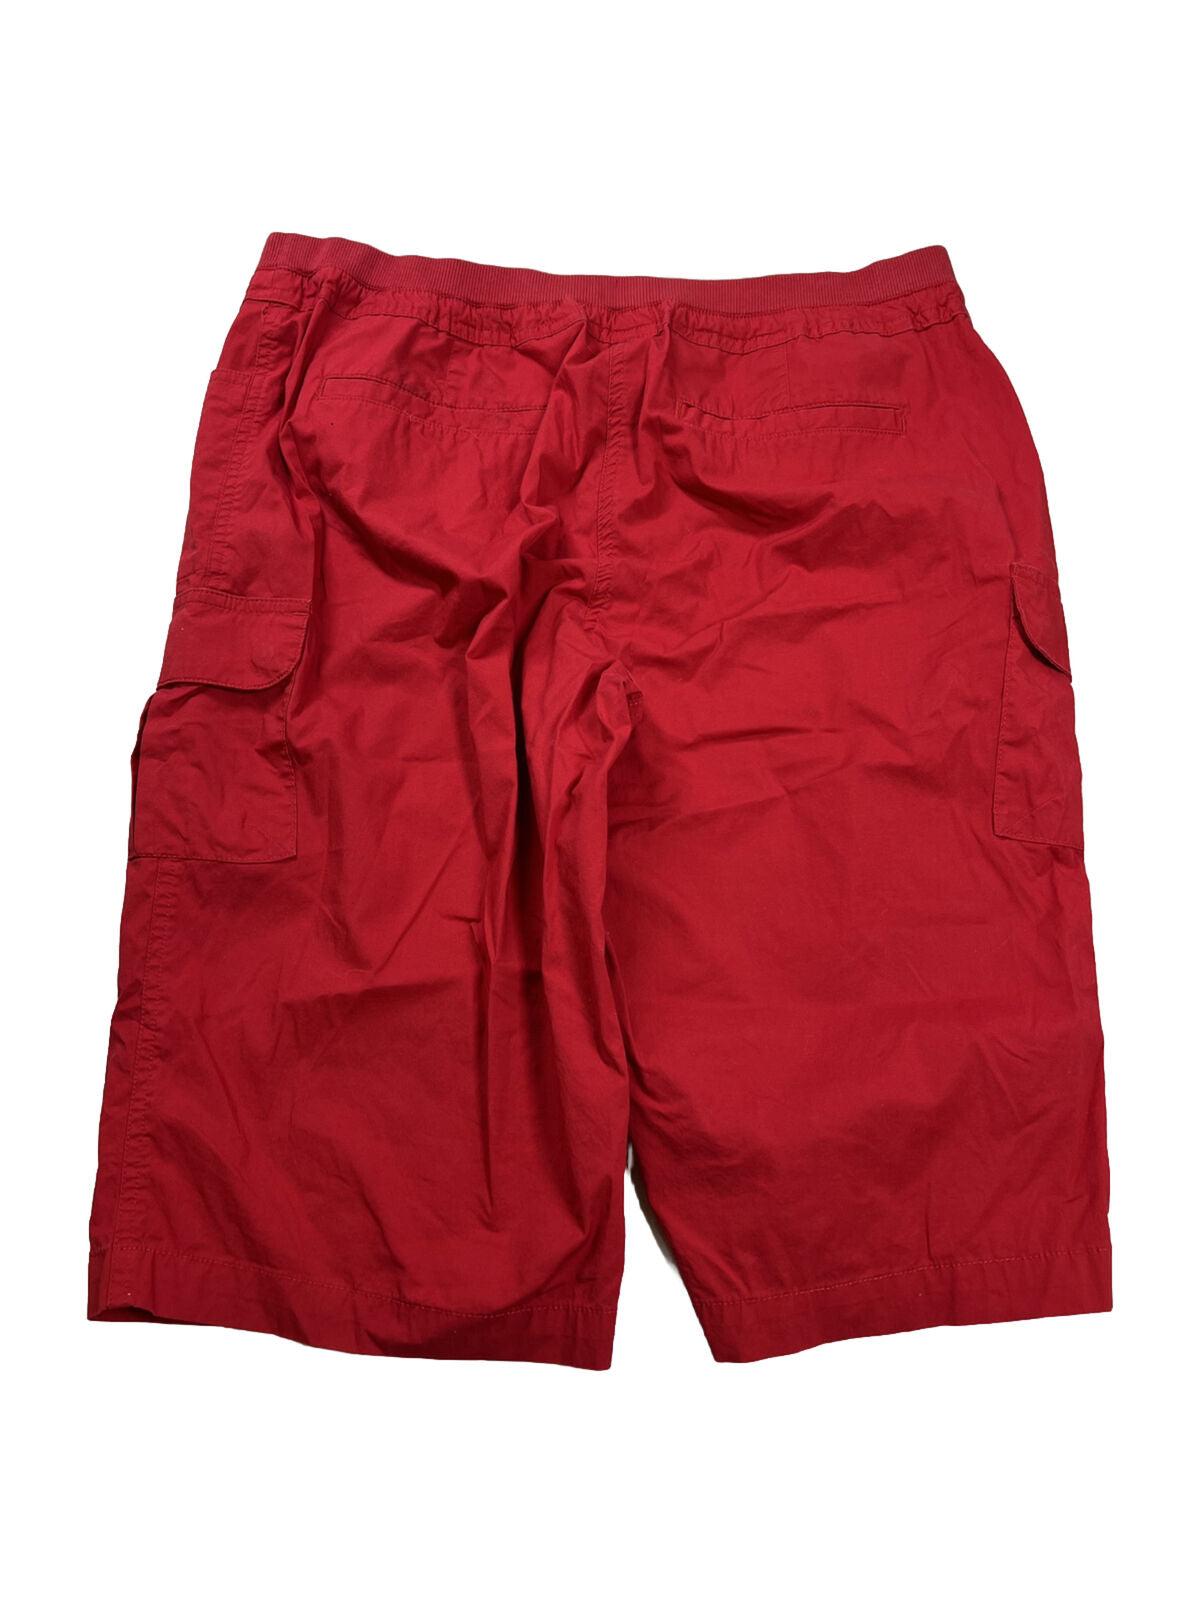 Chico's Pantalones cortos tipo cargo con cintura elástica, color rojo, para mujer - 2/US 12